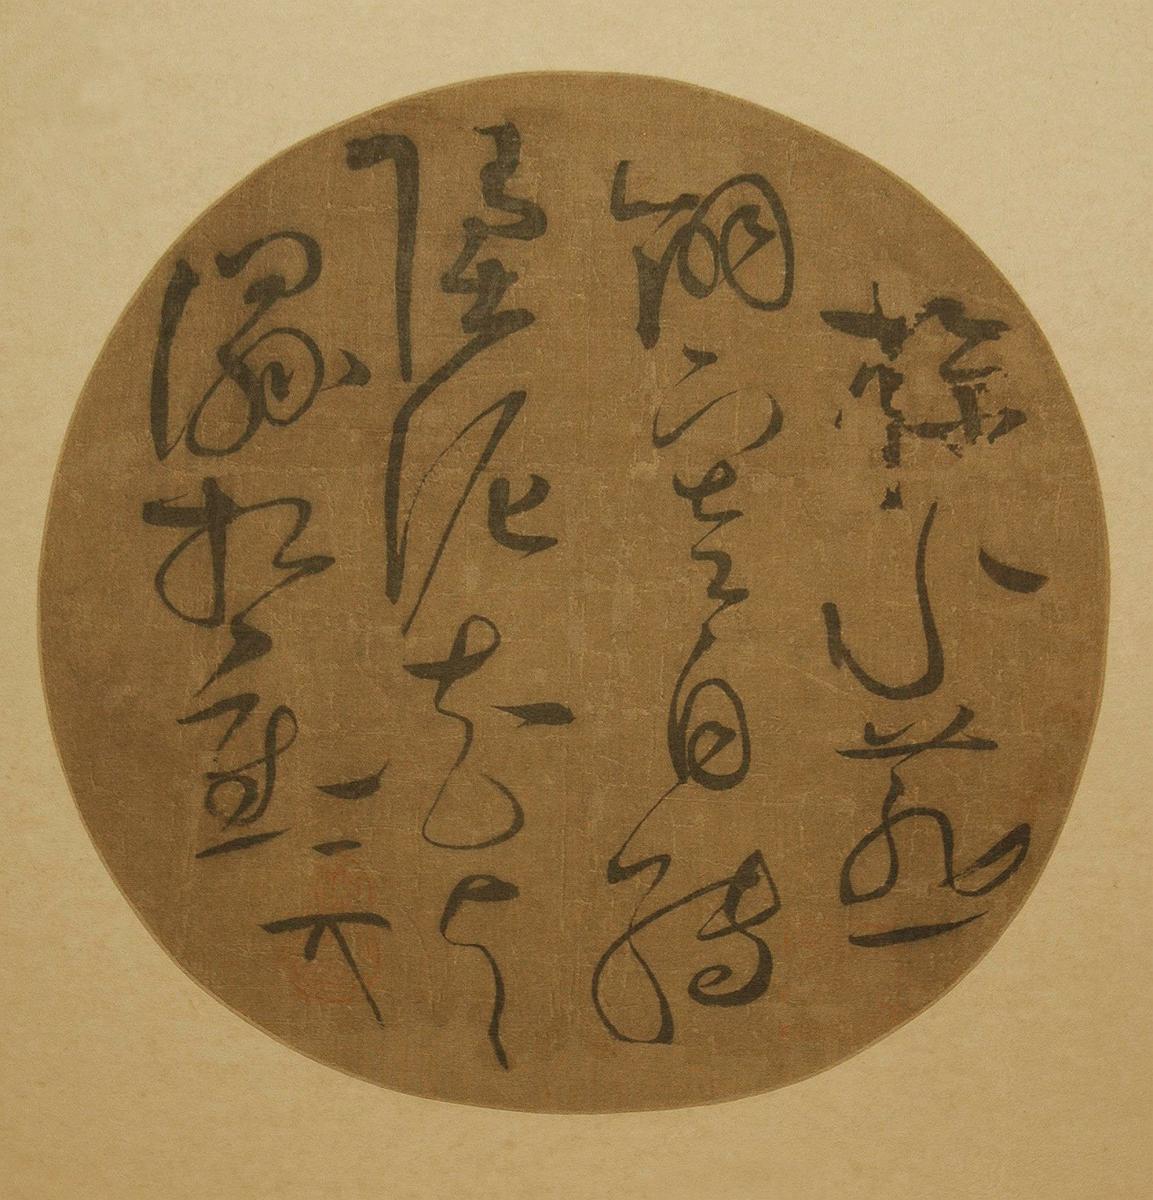 4厘米 上海博物馆藏 赵佶草书纨扇,是一件非常罕见的团扇书法作品